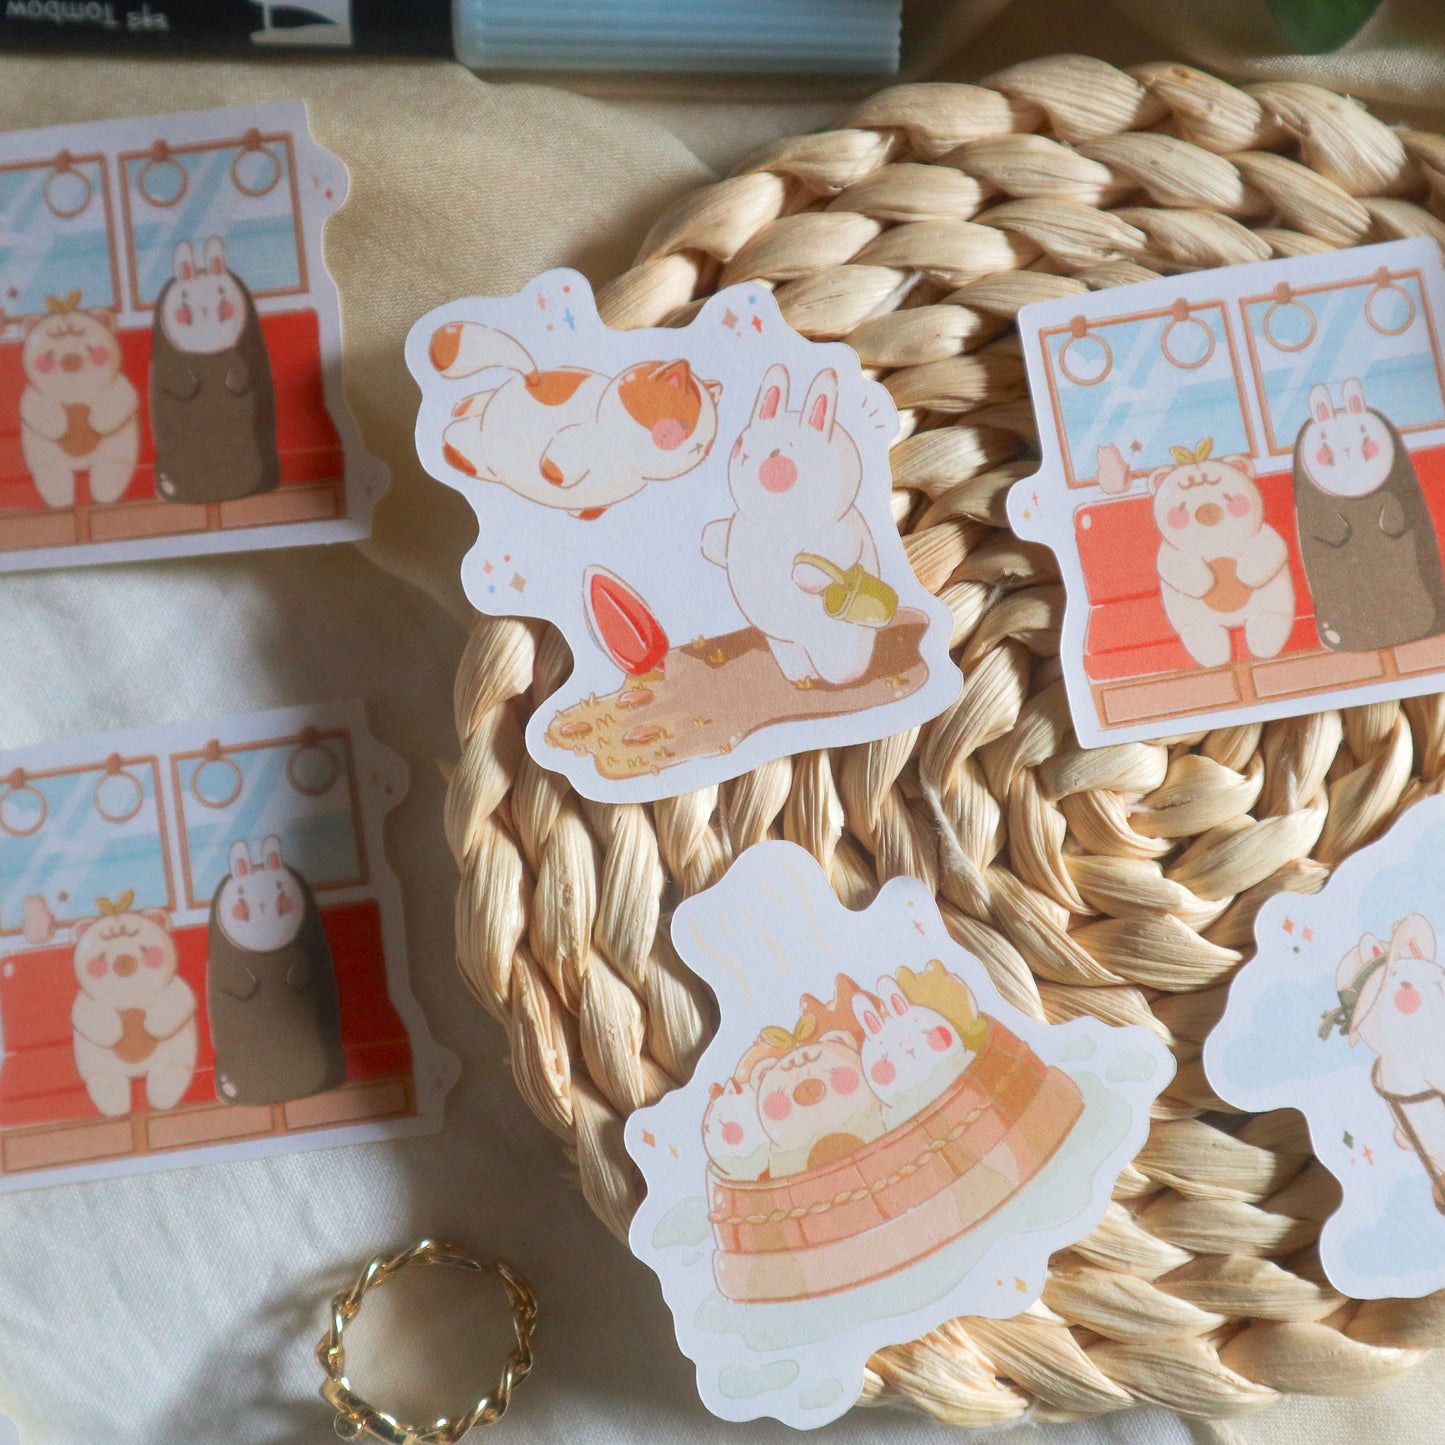 Sticker Set - Ghibli Village